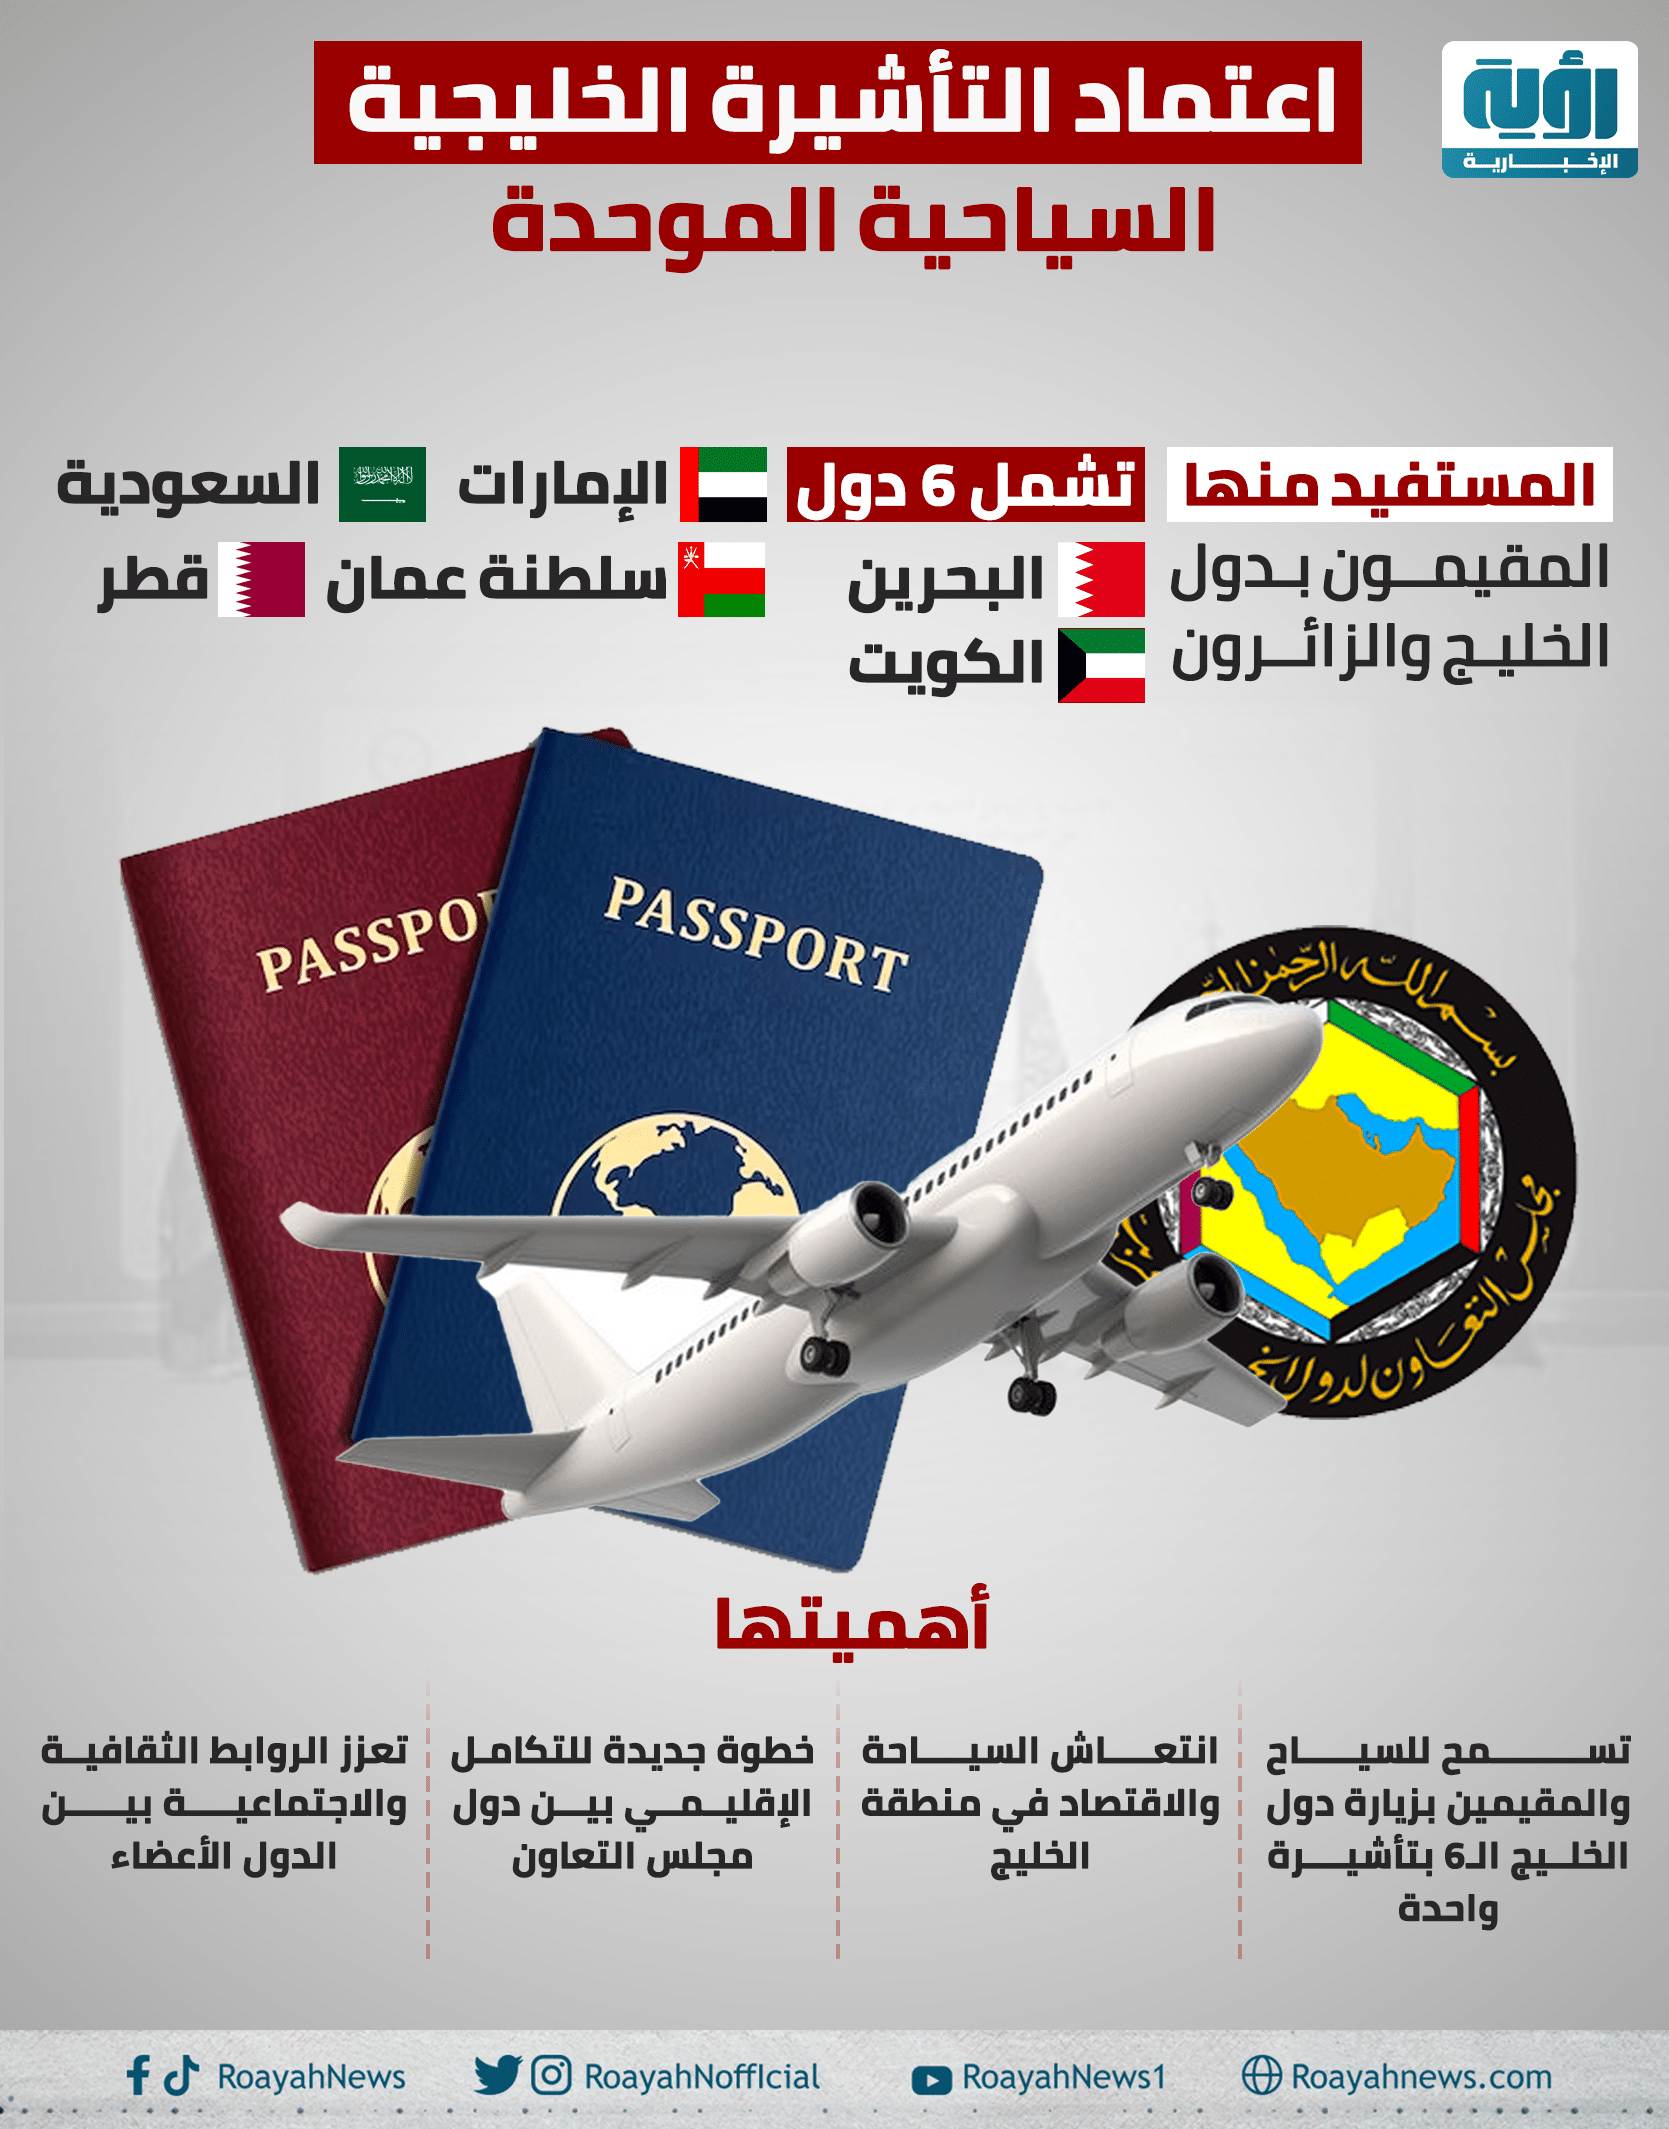 اعتماد التأشيرة الخليجية السياحية الموحدة